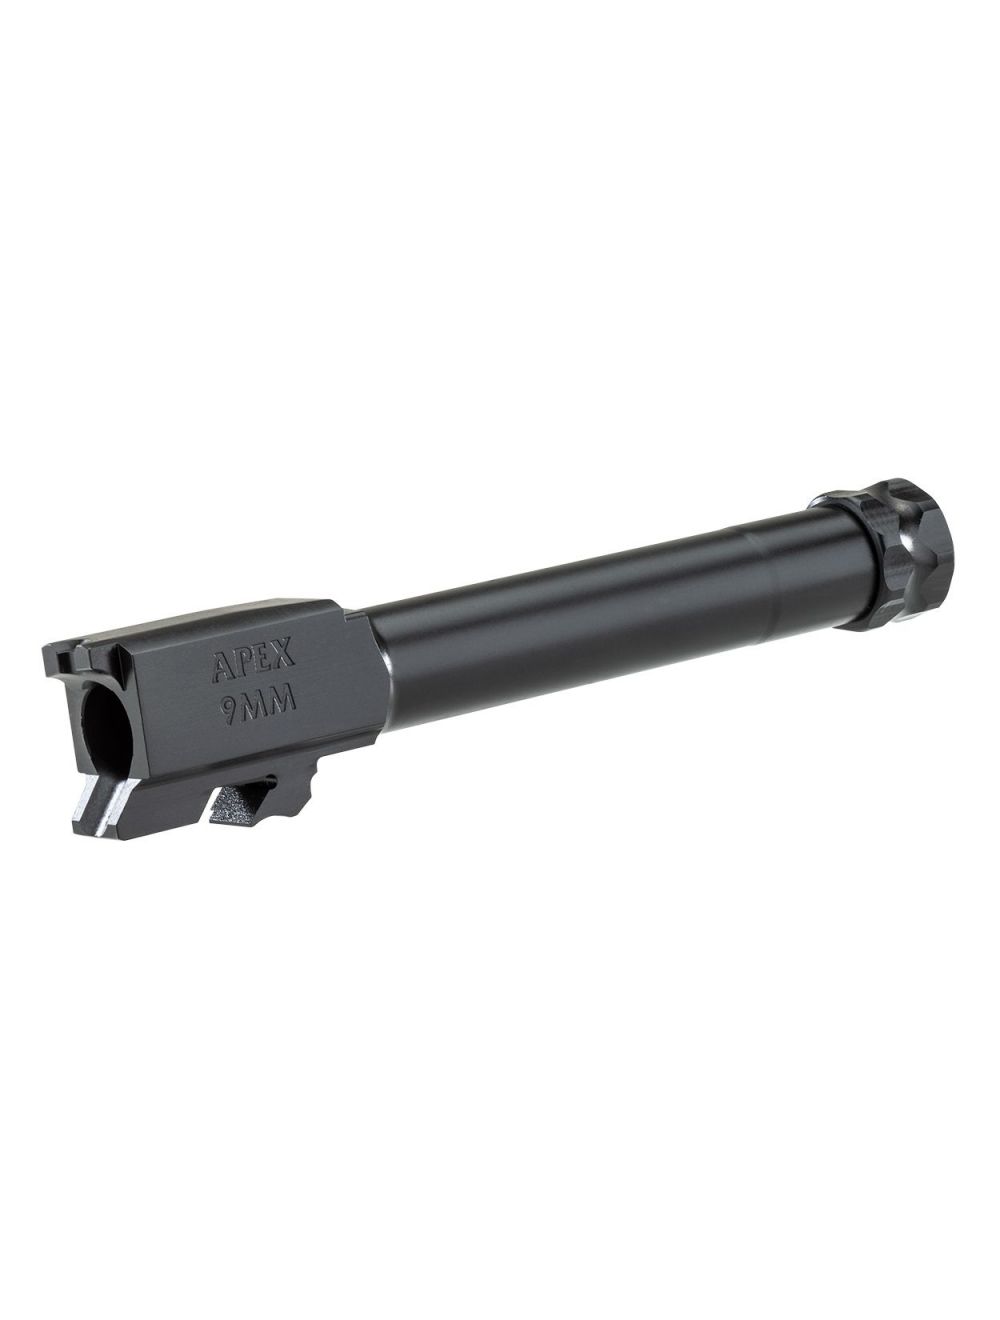 Apex 9mm Barrel for M&P